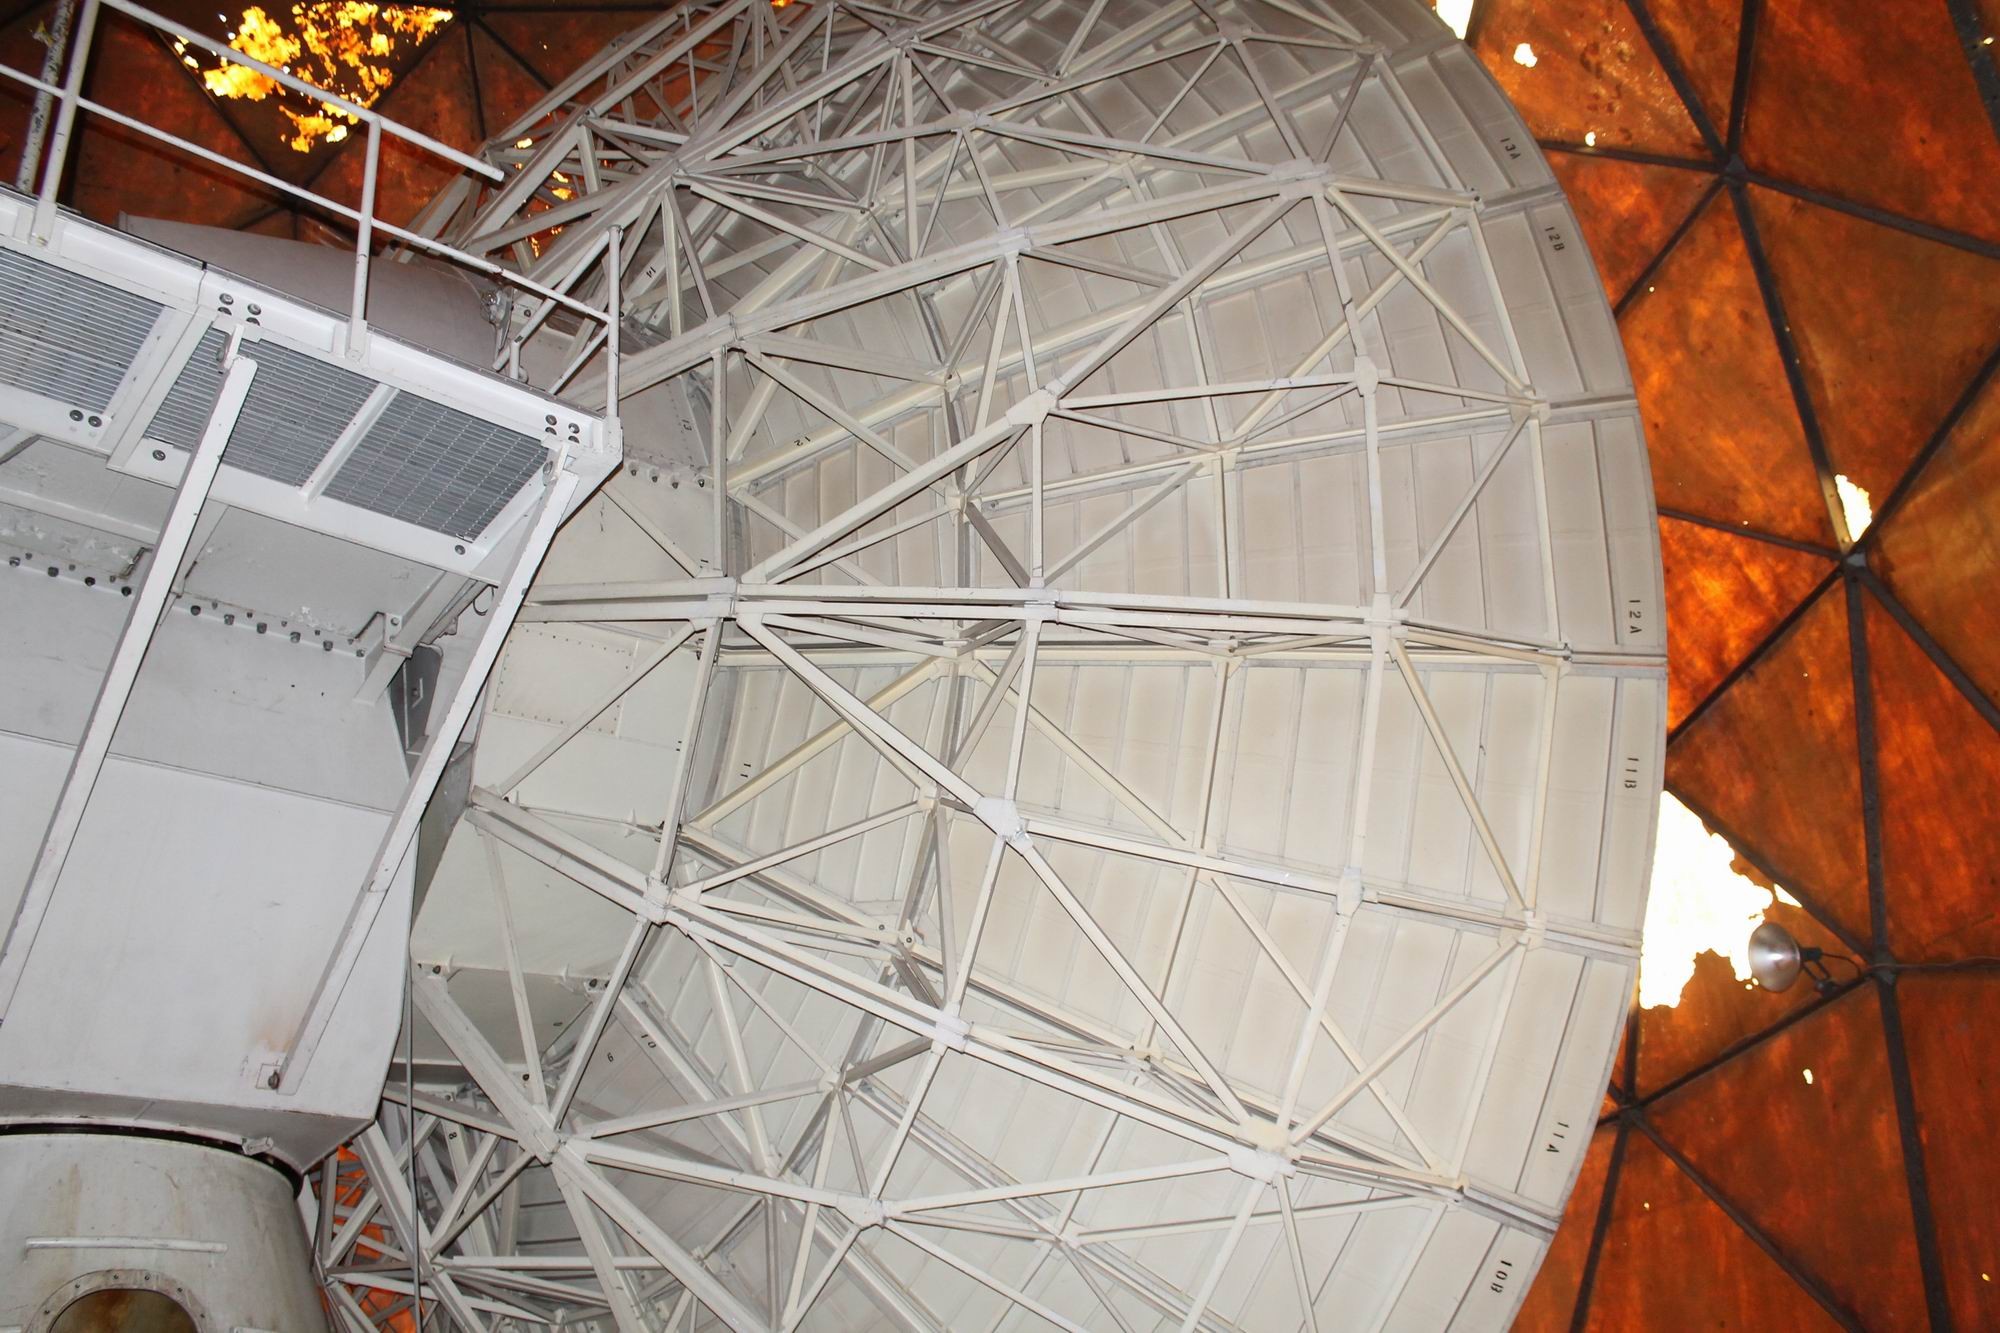 Havacılığın kenti Kayseri’de Türkiye’nin ilk radyo astronomi çalışmaları yapılacak